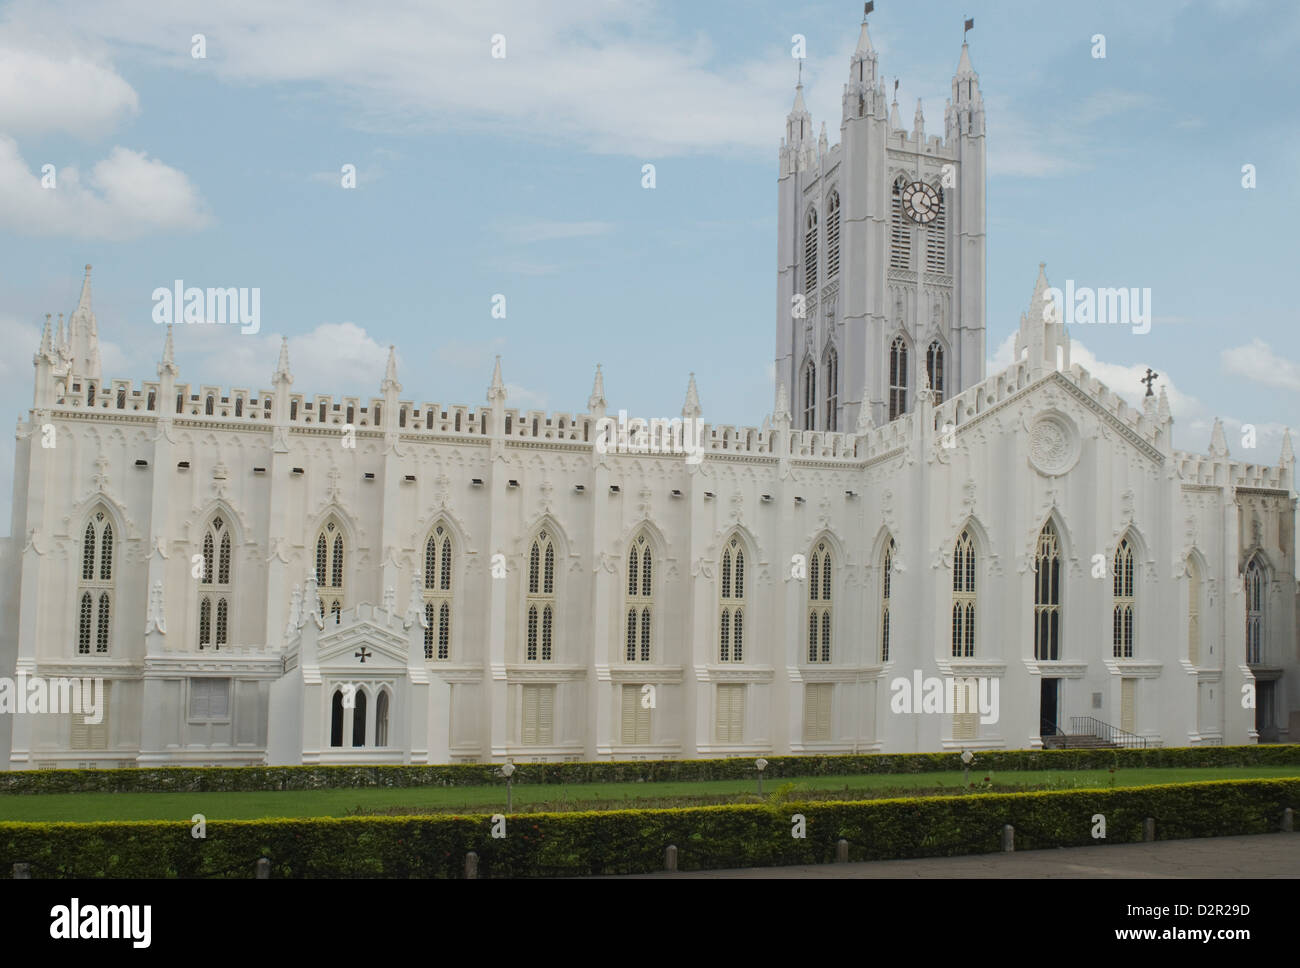 Façade d'une cathédrale, la Cathédrale St Paul, Kolkata, West Bengal, India Banque D'Images